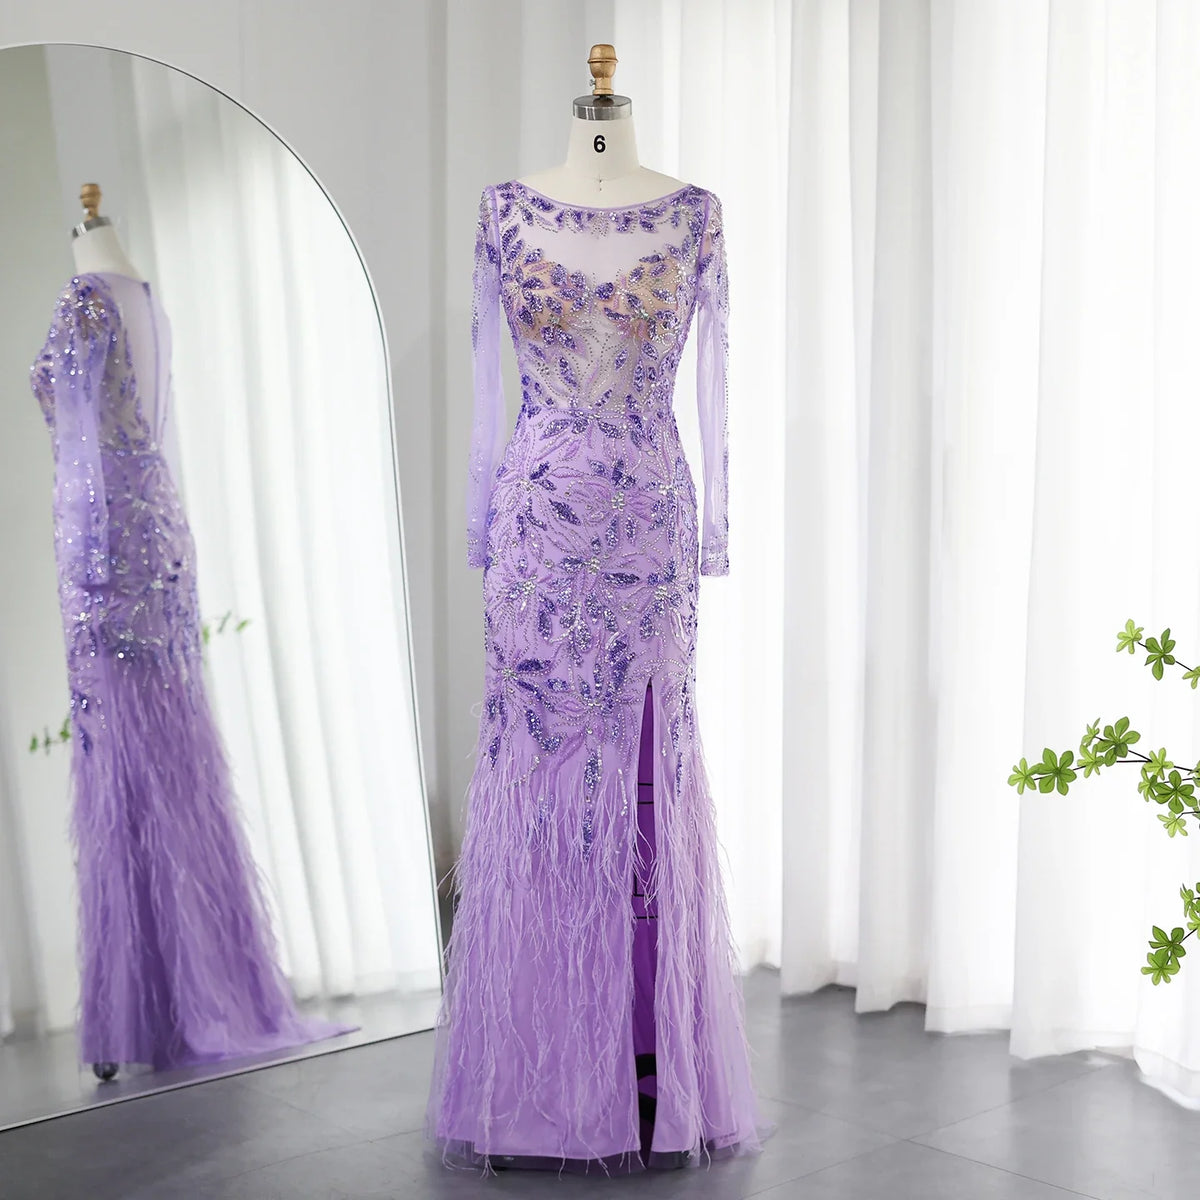 Sharon Said Dubai Lila Luxus Federn Abendkleider für Frauen Hochzeit Elegante Lange Ärmel Meerjungfrau Abschlussball Party Kleider SS189